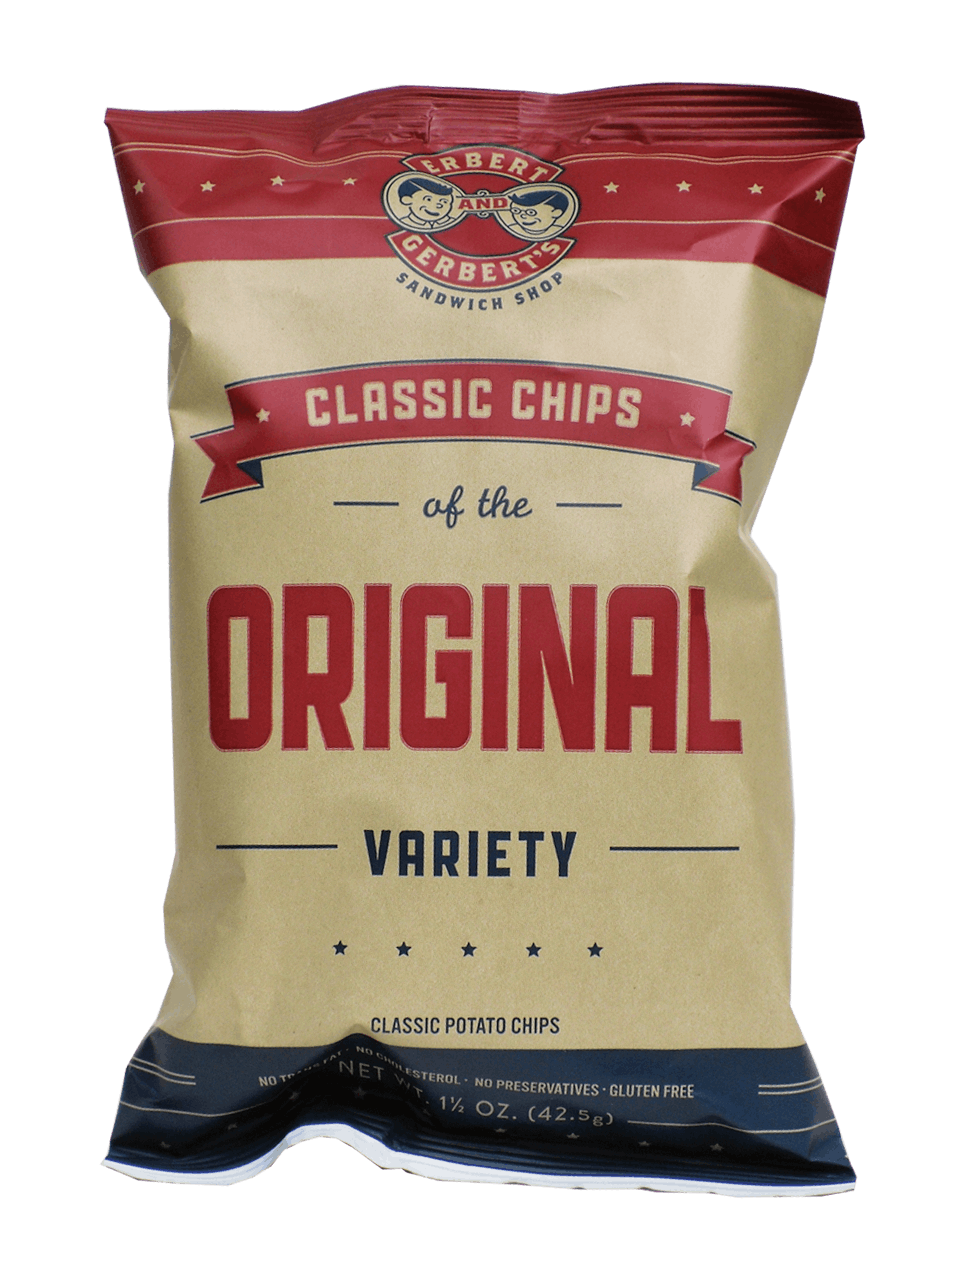 Chips - Original from Erbert and Gerbert's Sandwich Shop in La Crosse, WI